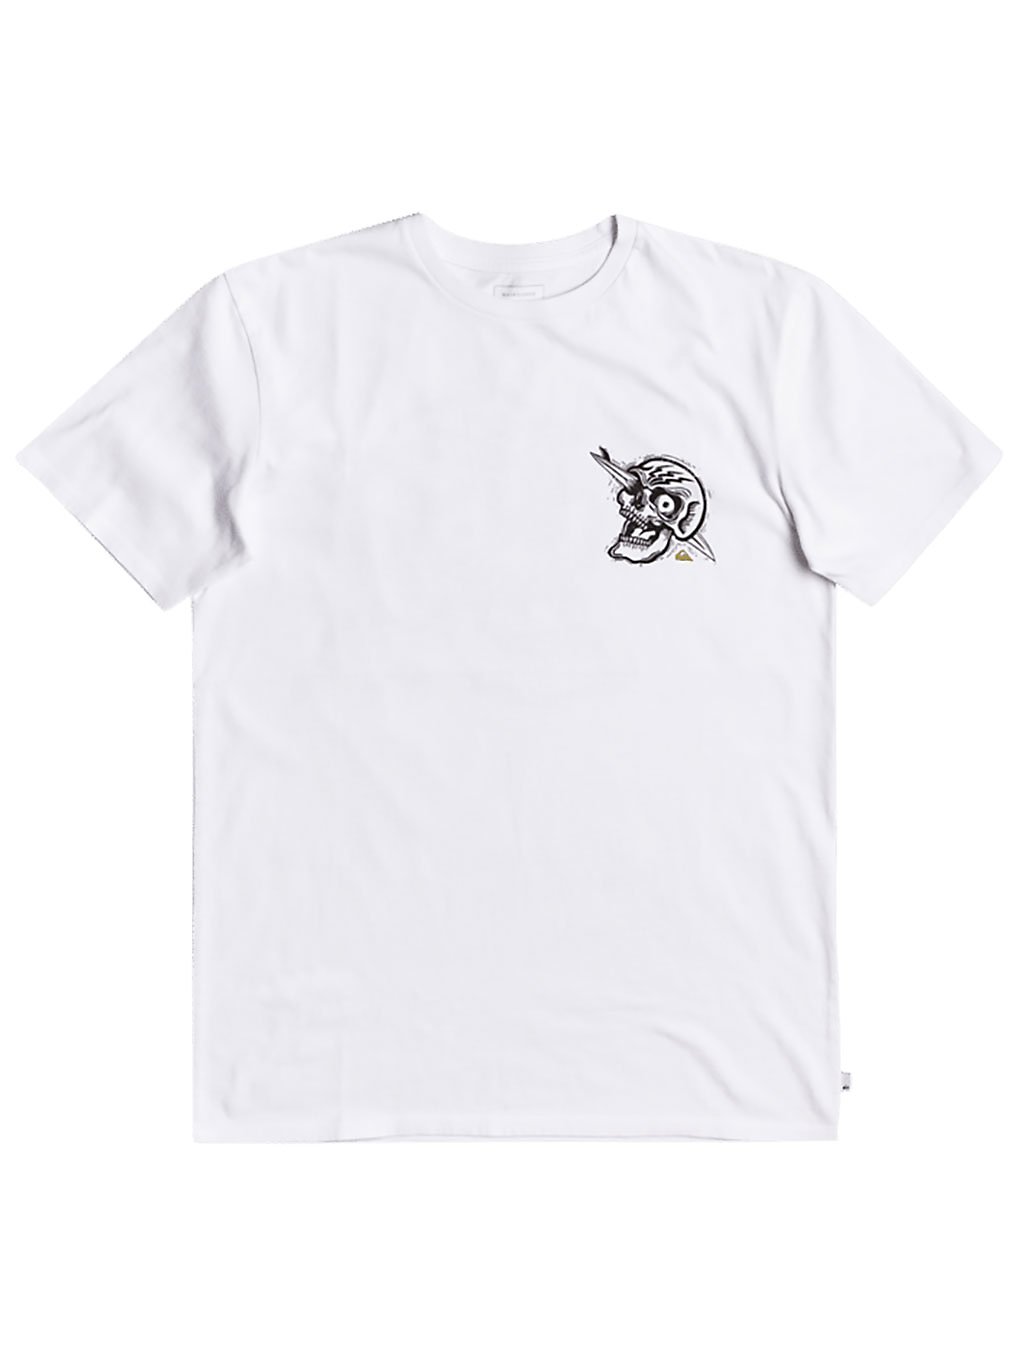 Quiksilver Summer Skull T-Shirt white